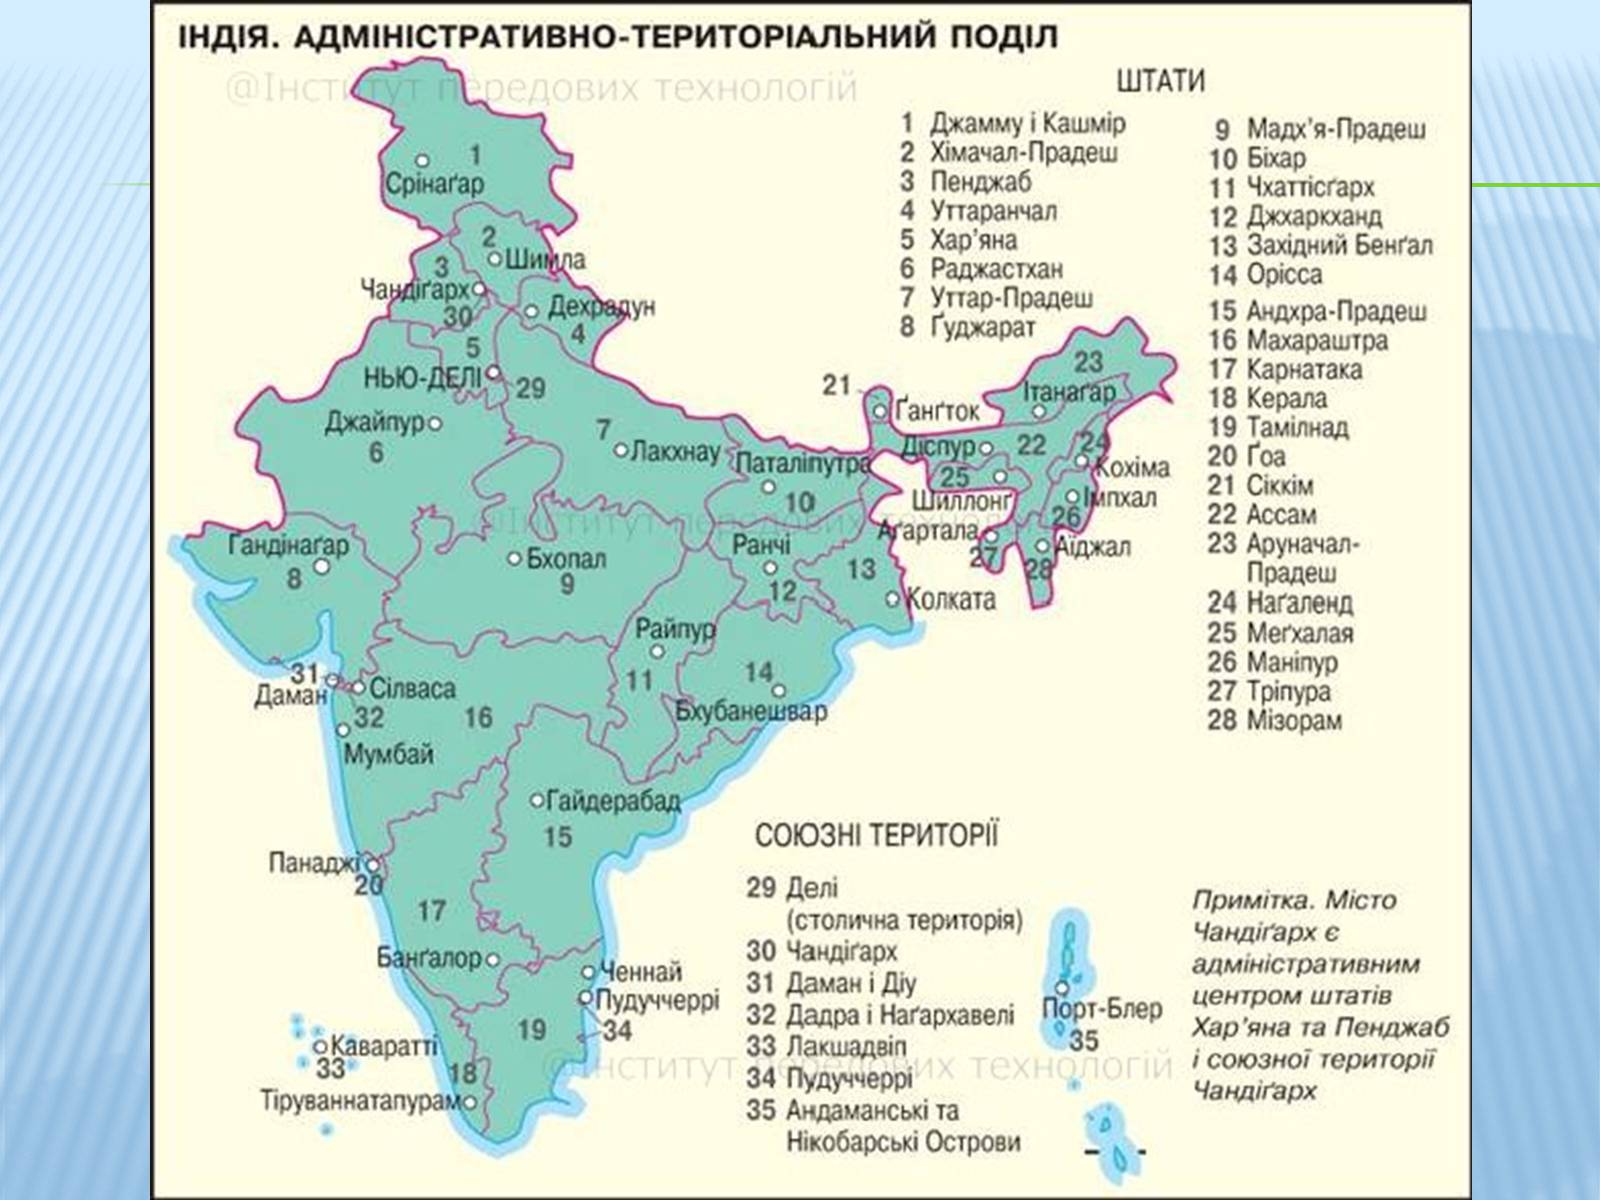 Карта индии на русском с городами подробная